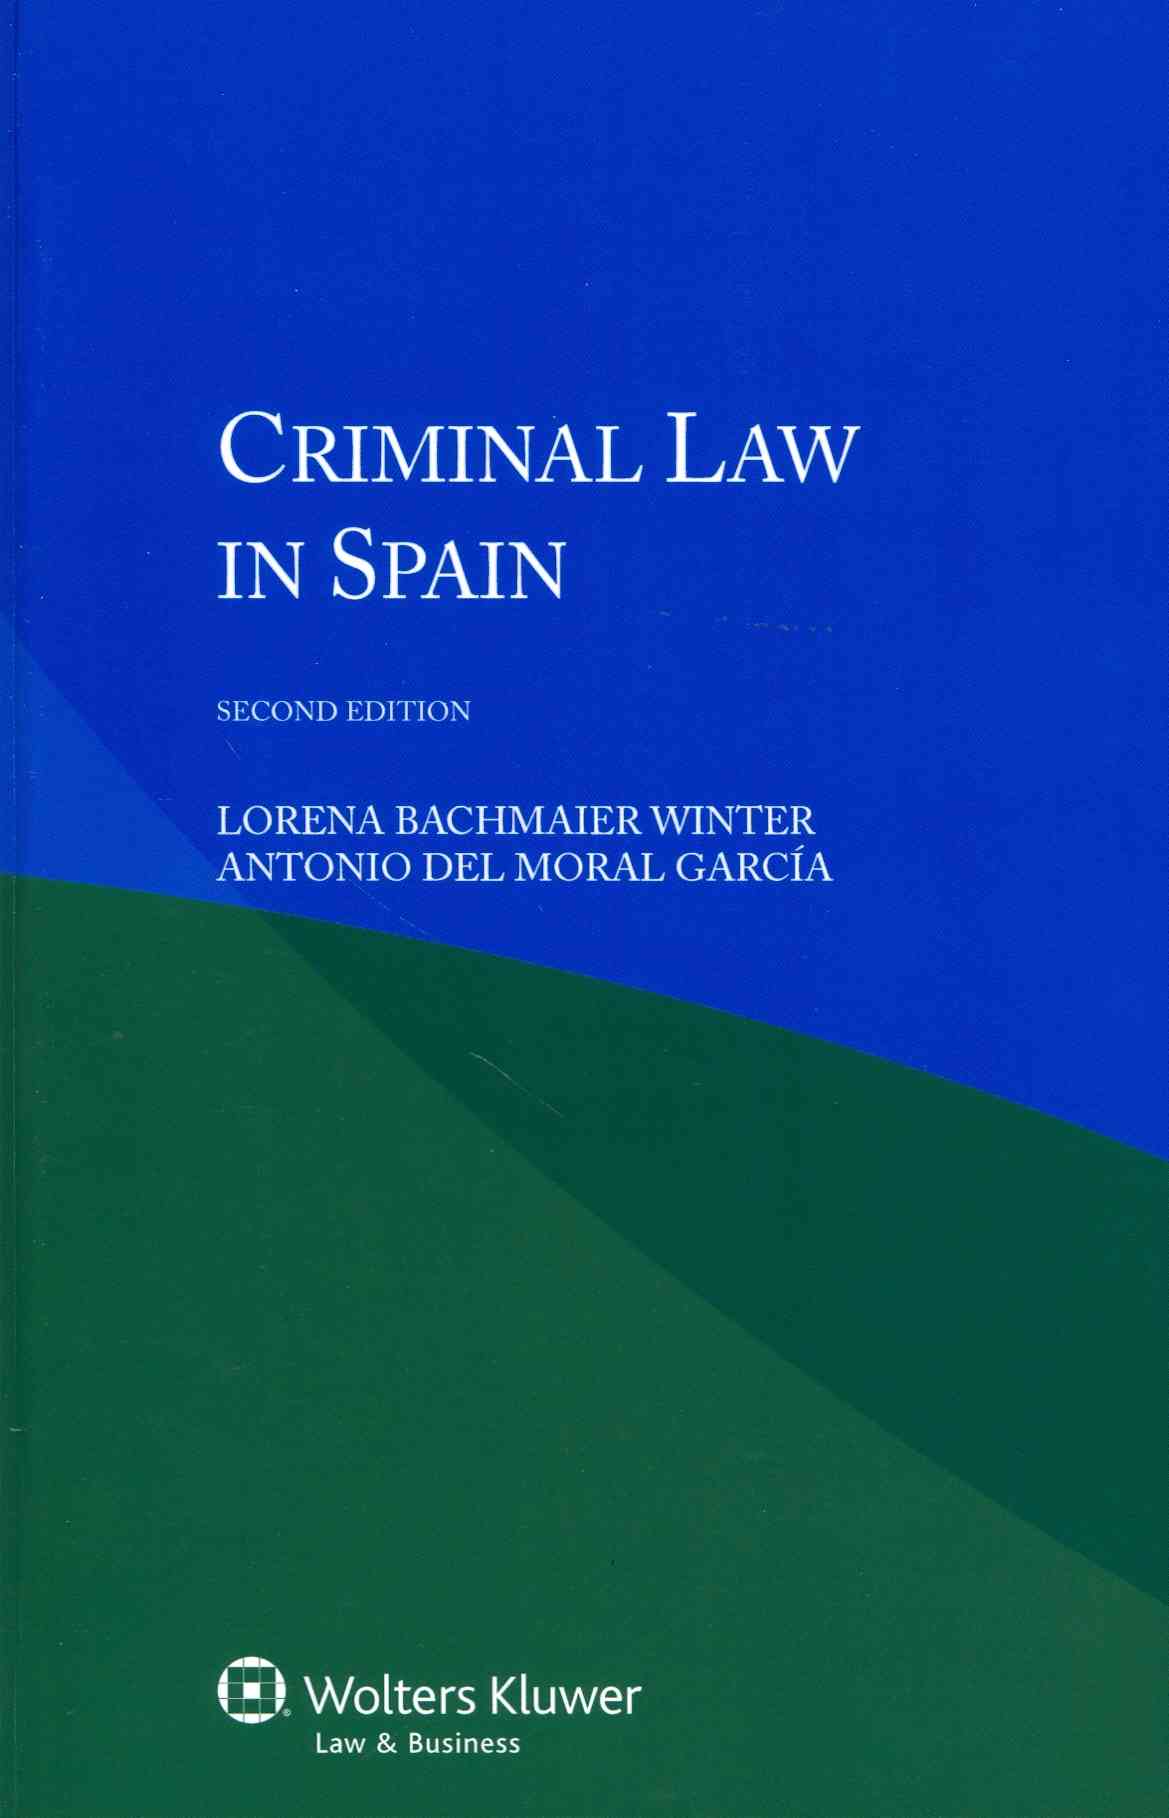 Criminal Law in Spain Lorena Bachmaier Winter and Antonio del Moral Garcia